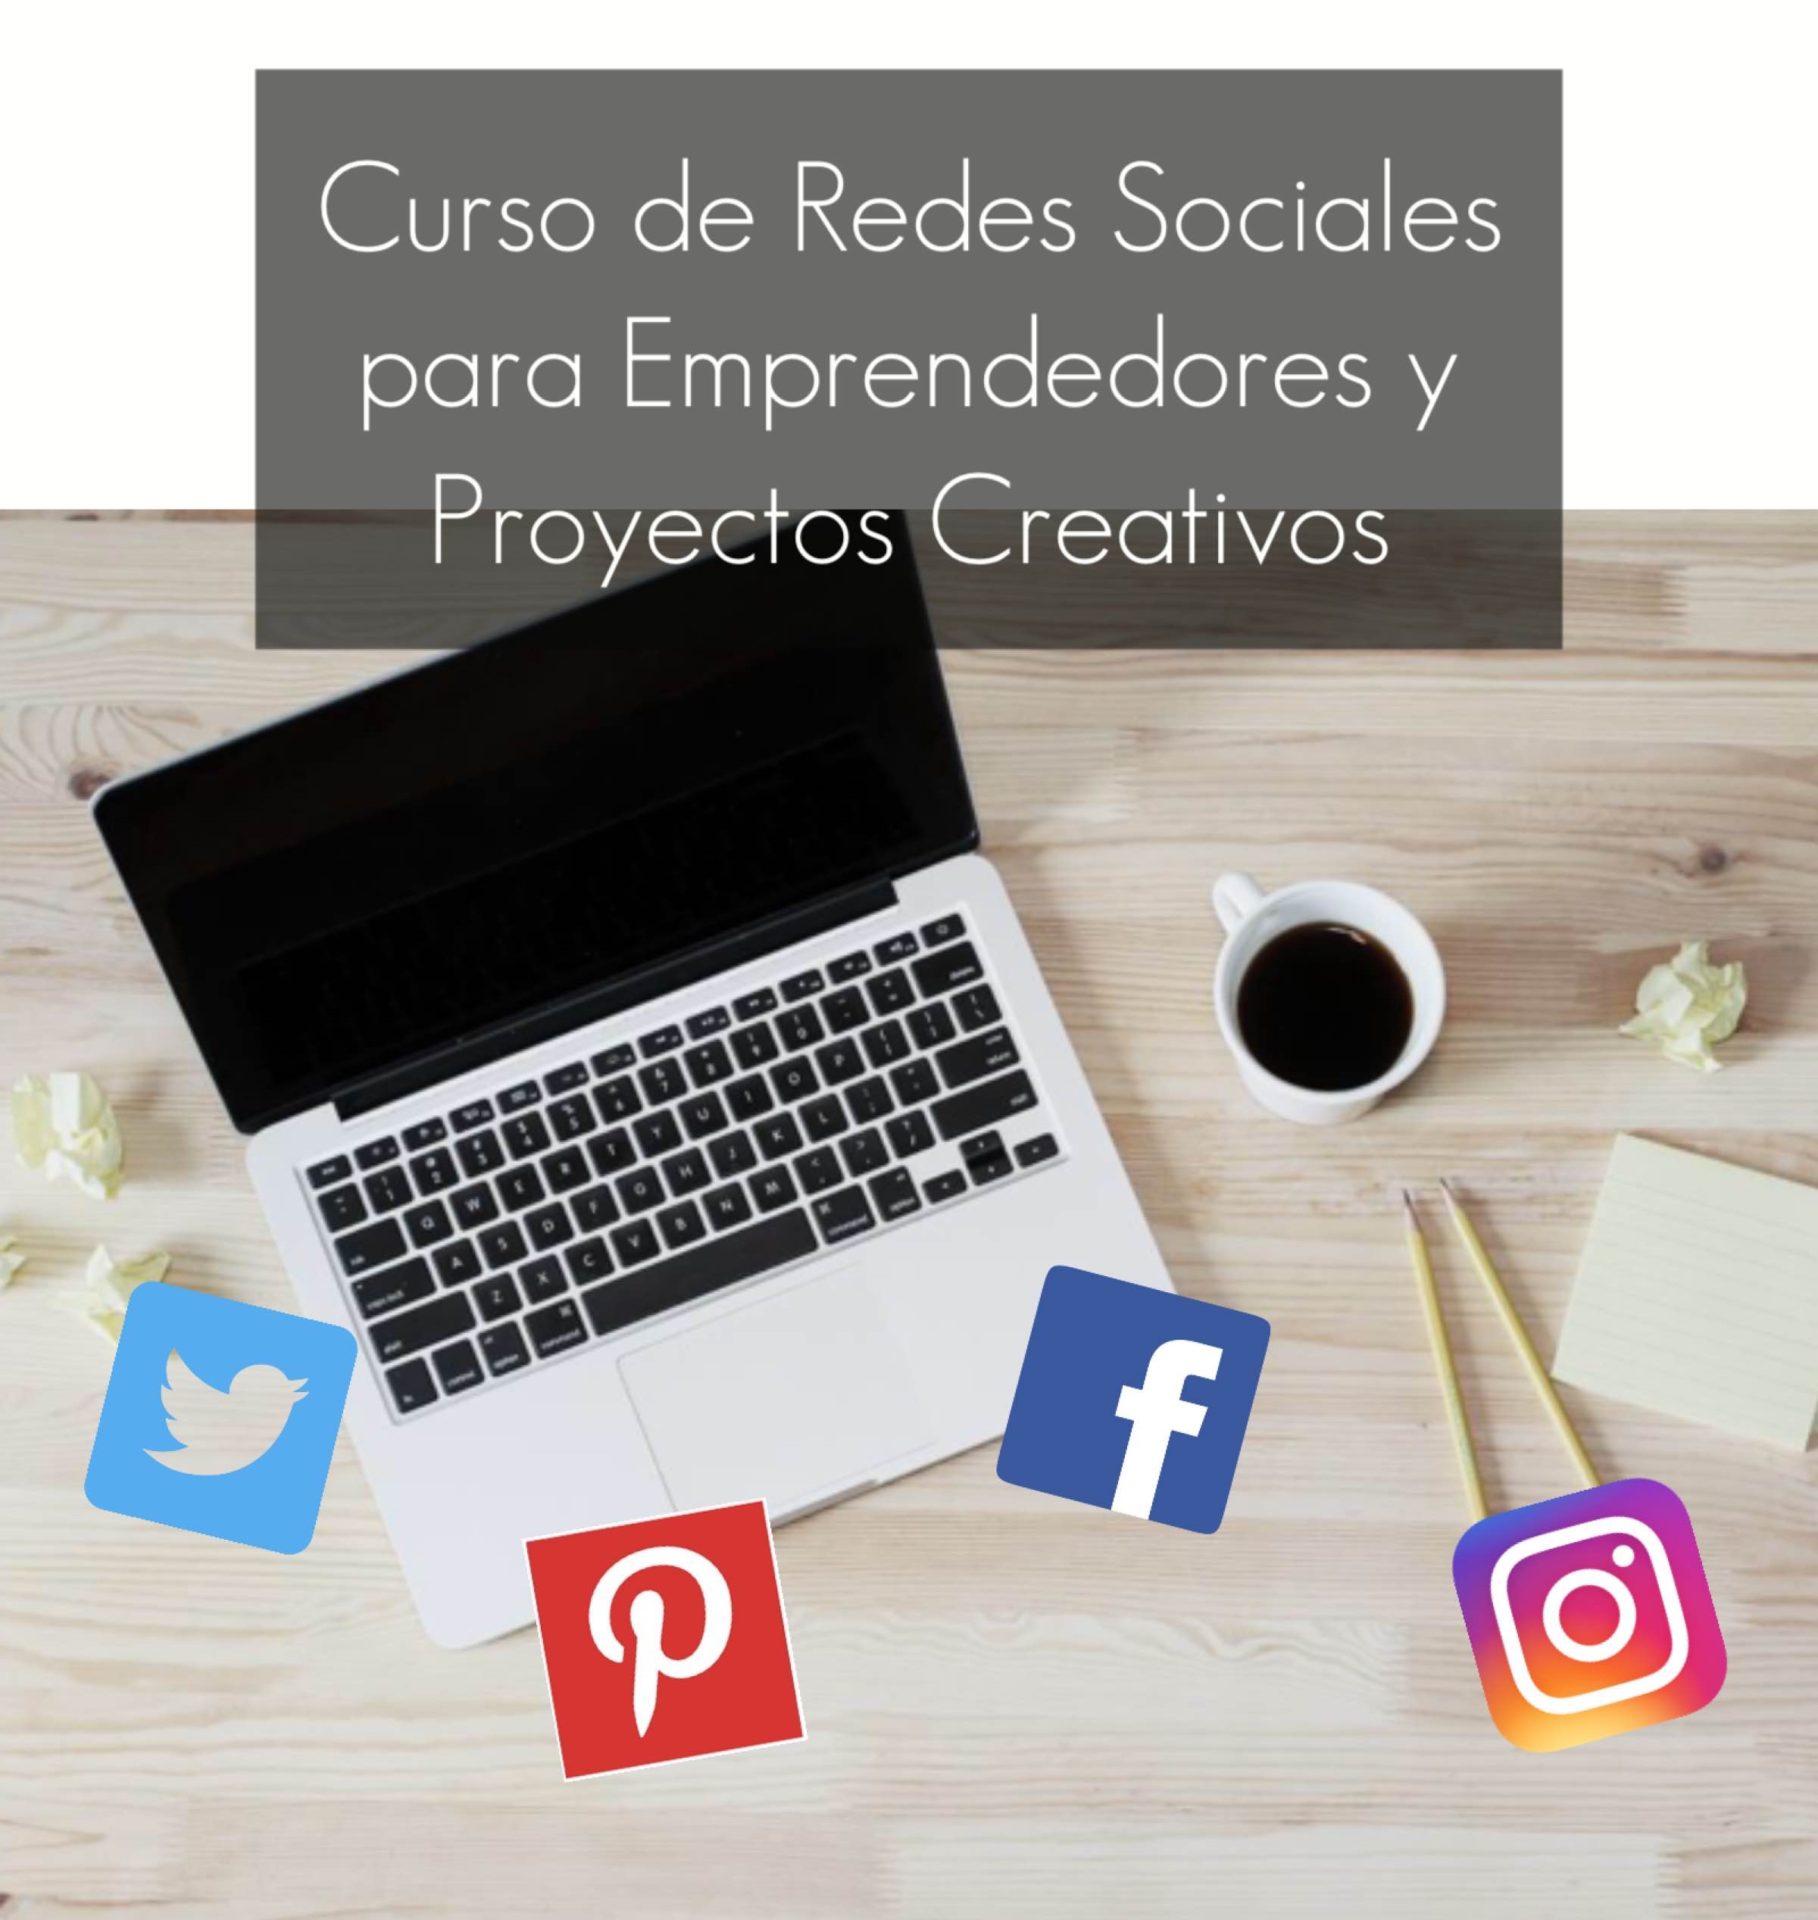 Curso de redes sociales, marketing, social media, empresa, autonomo, emprendedor, taller, proyectos creativos, barcelona, mericakes, 2.0, comunity manager.